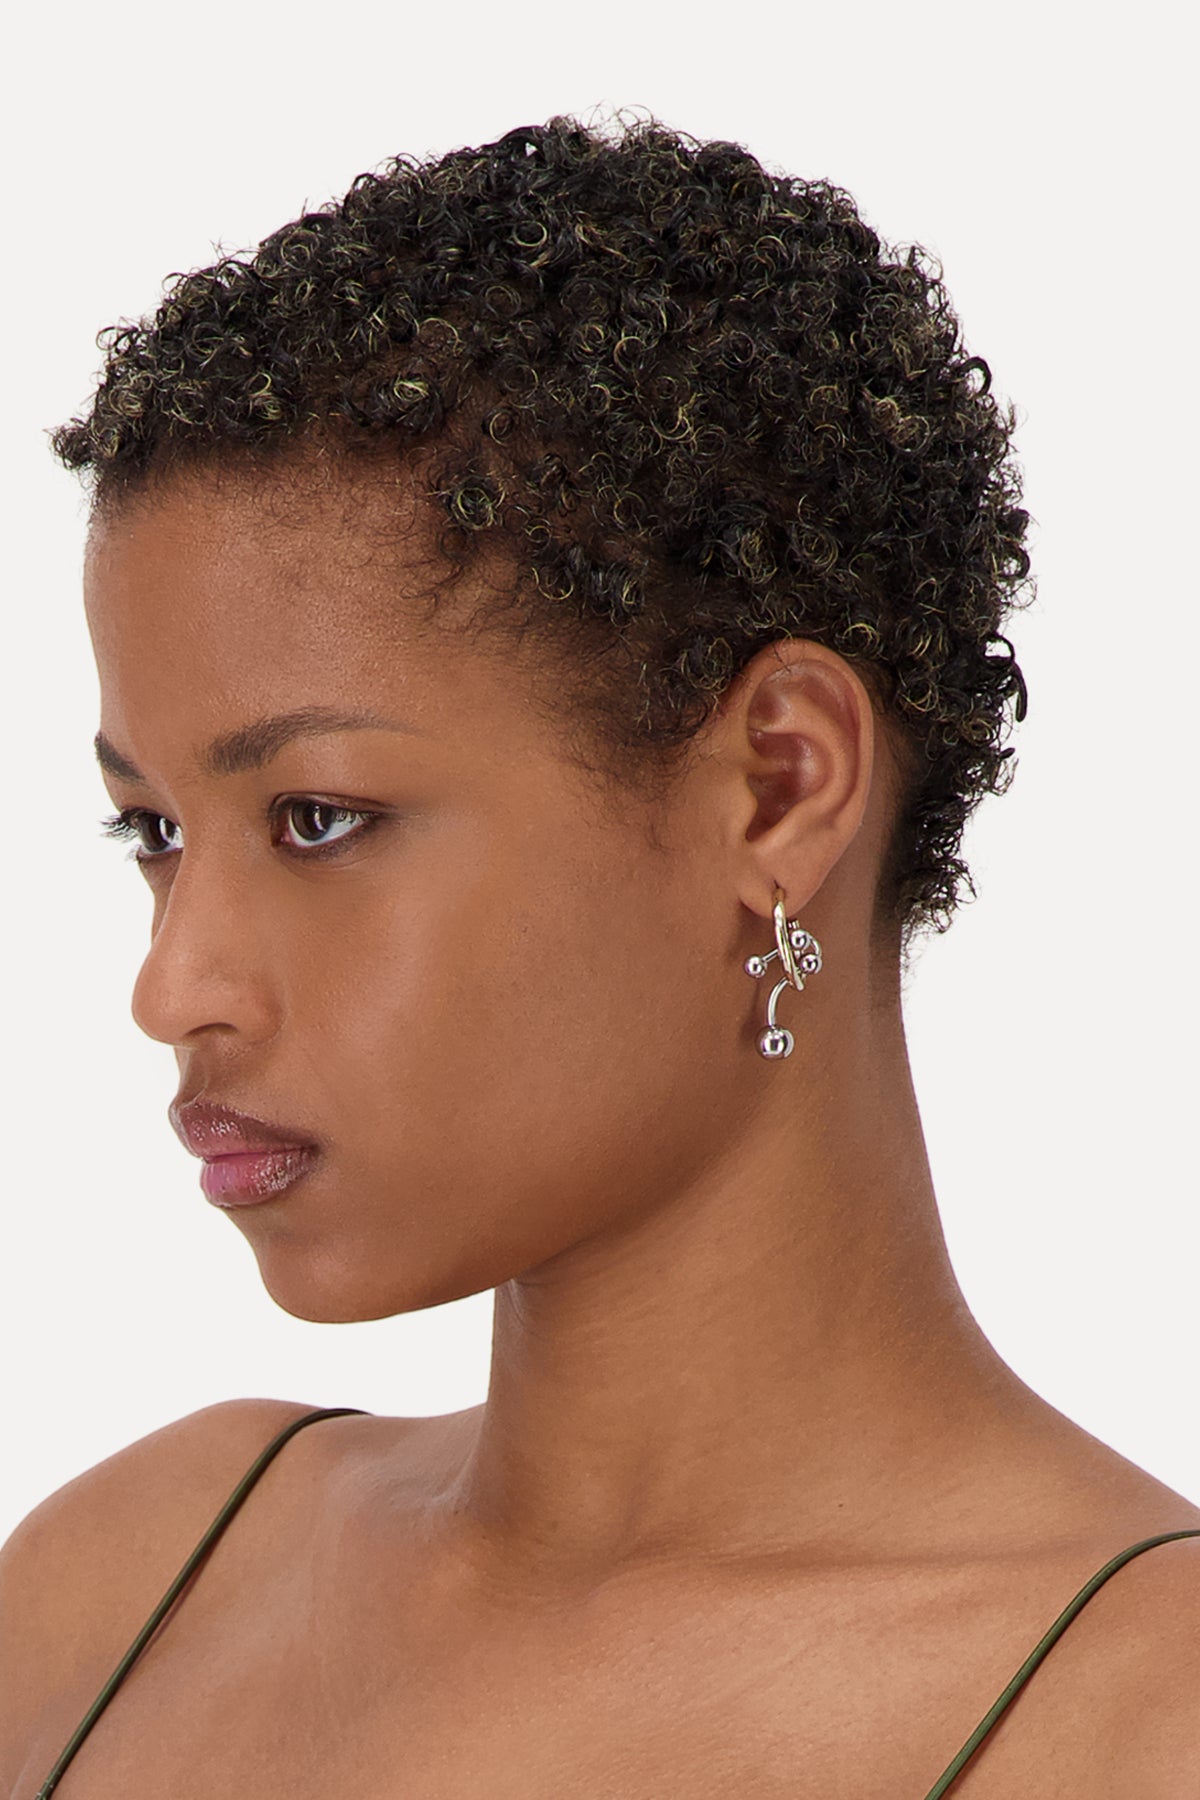 Debbi earrings